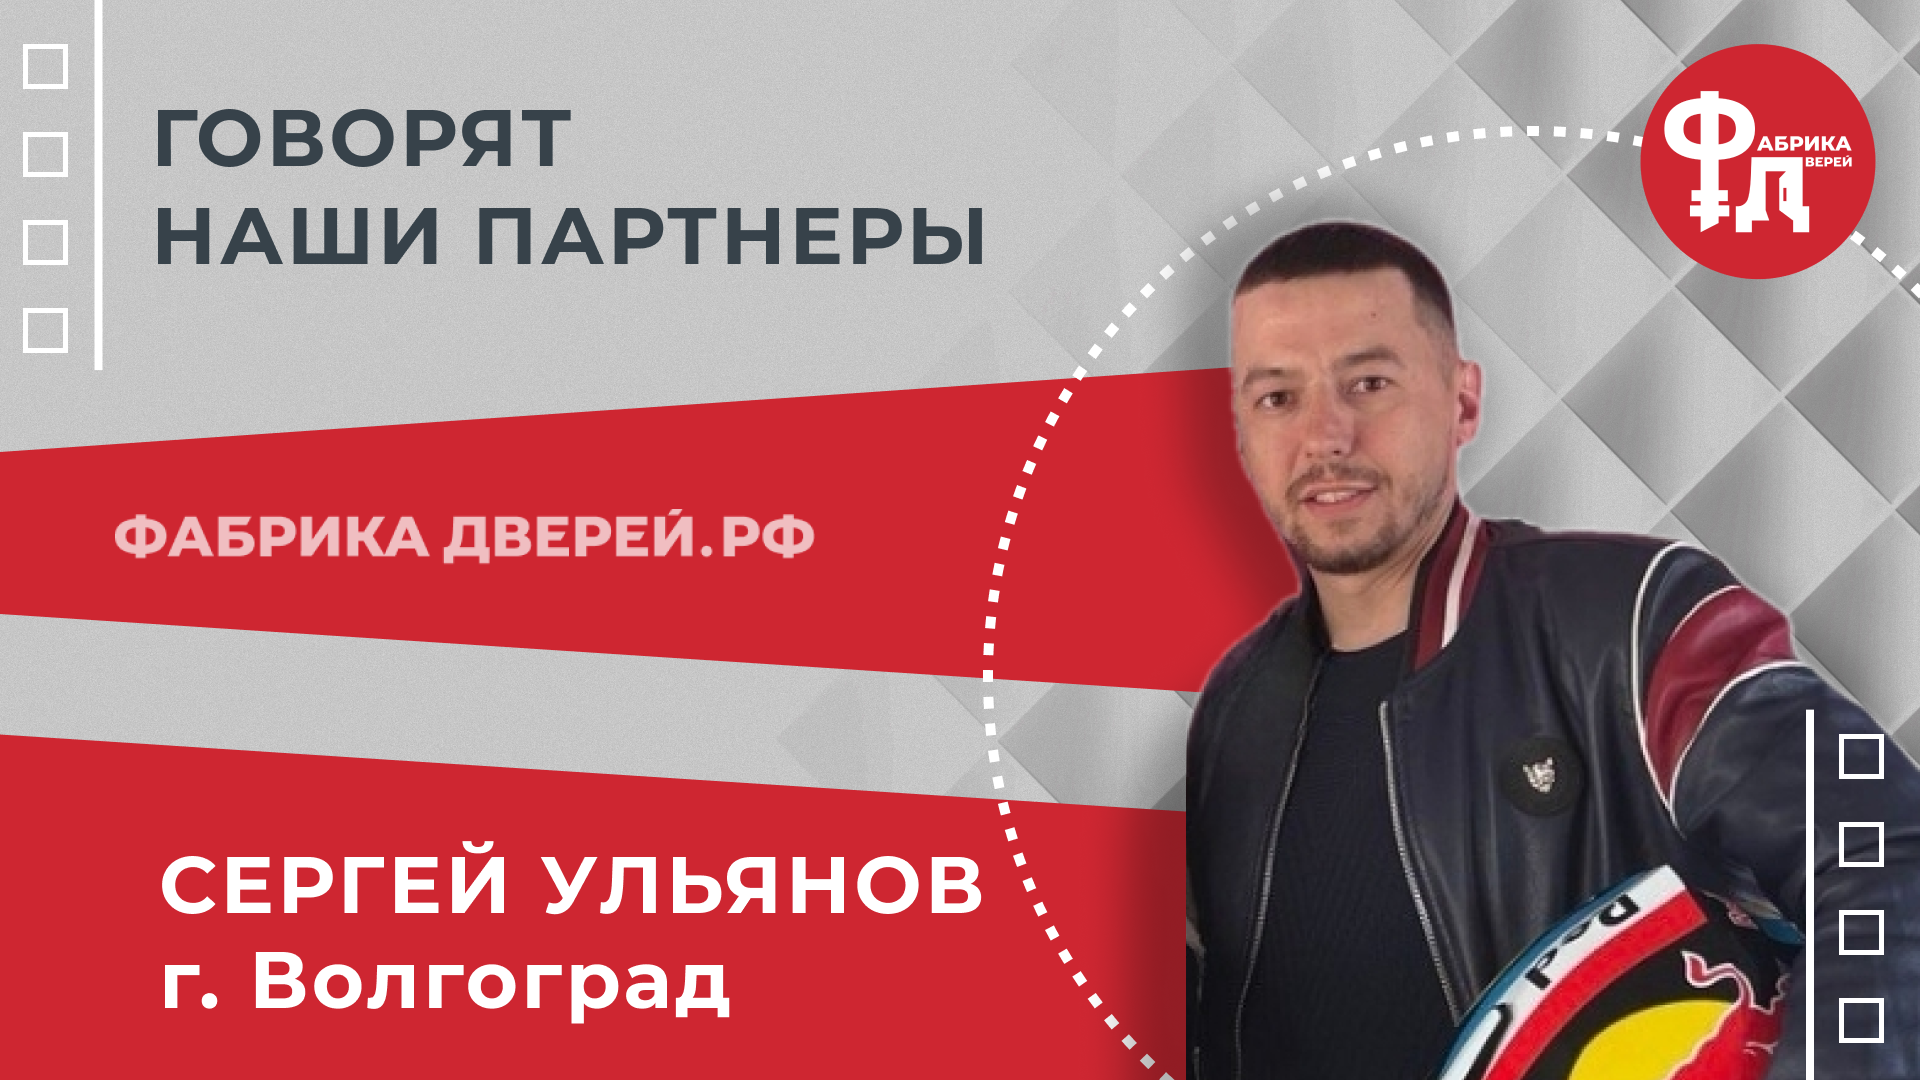 В Топ-3 Яндекса за месяц. Говорит Сергей Ульянов - партнер Фабрики Дверей из Волгограда